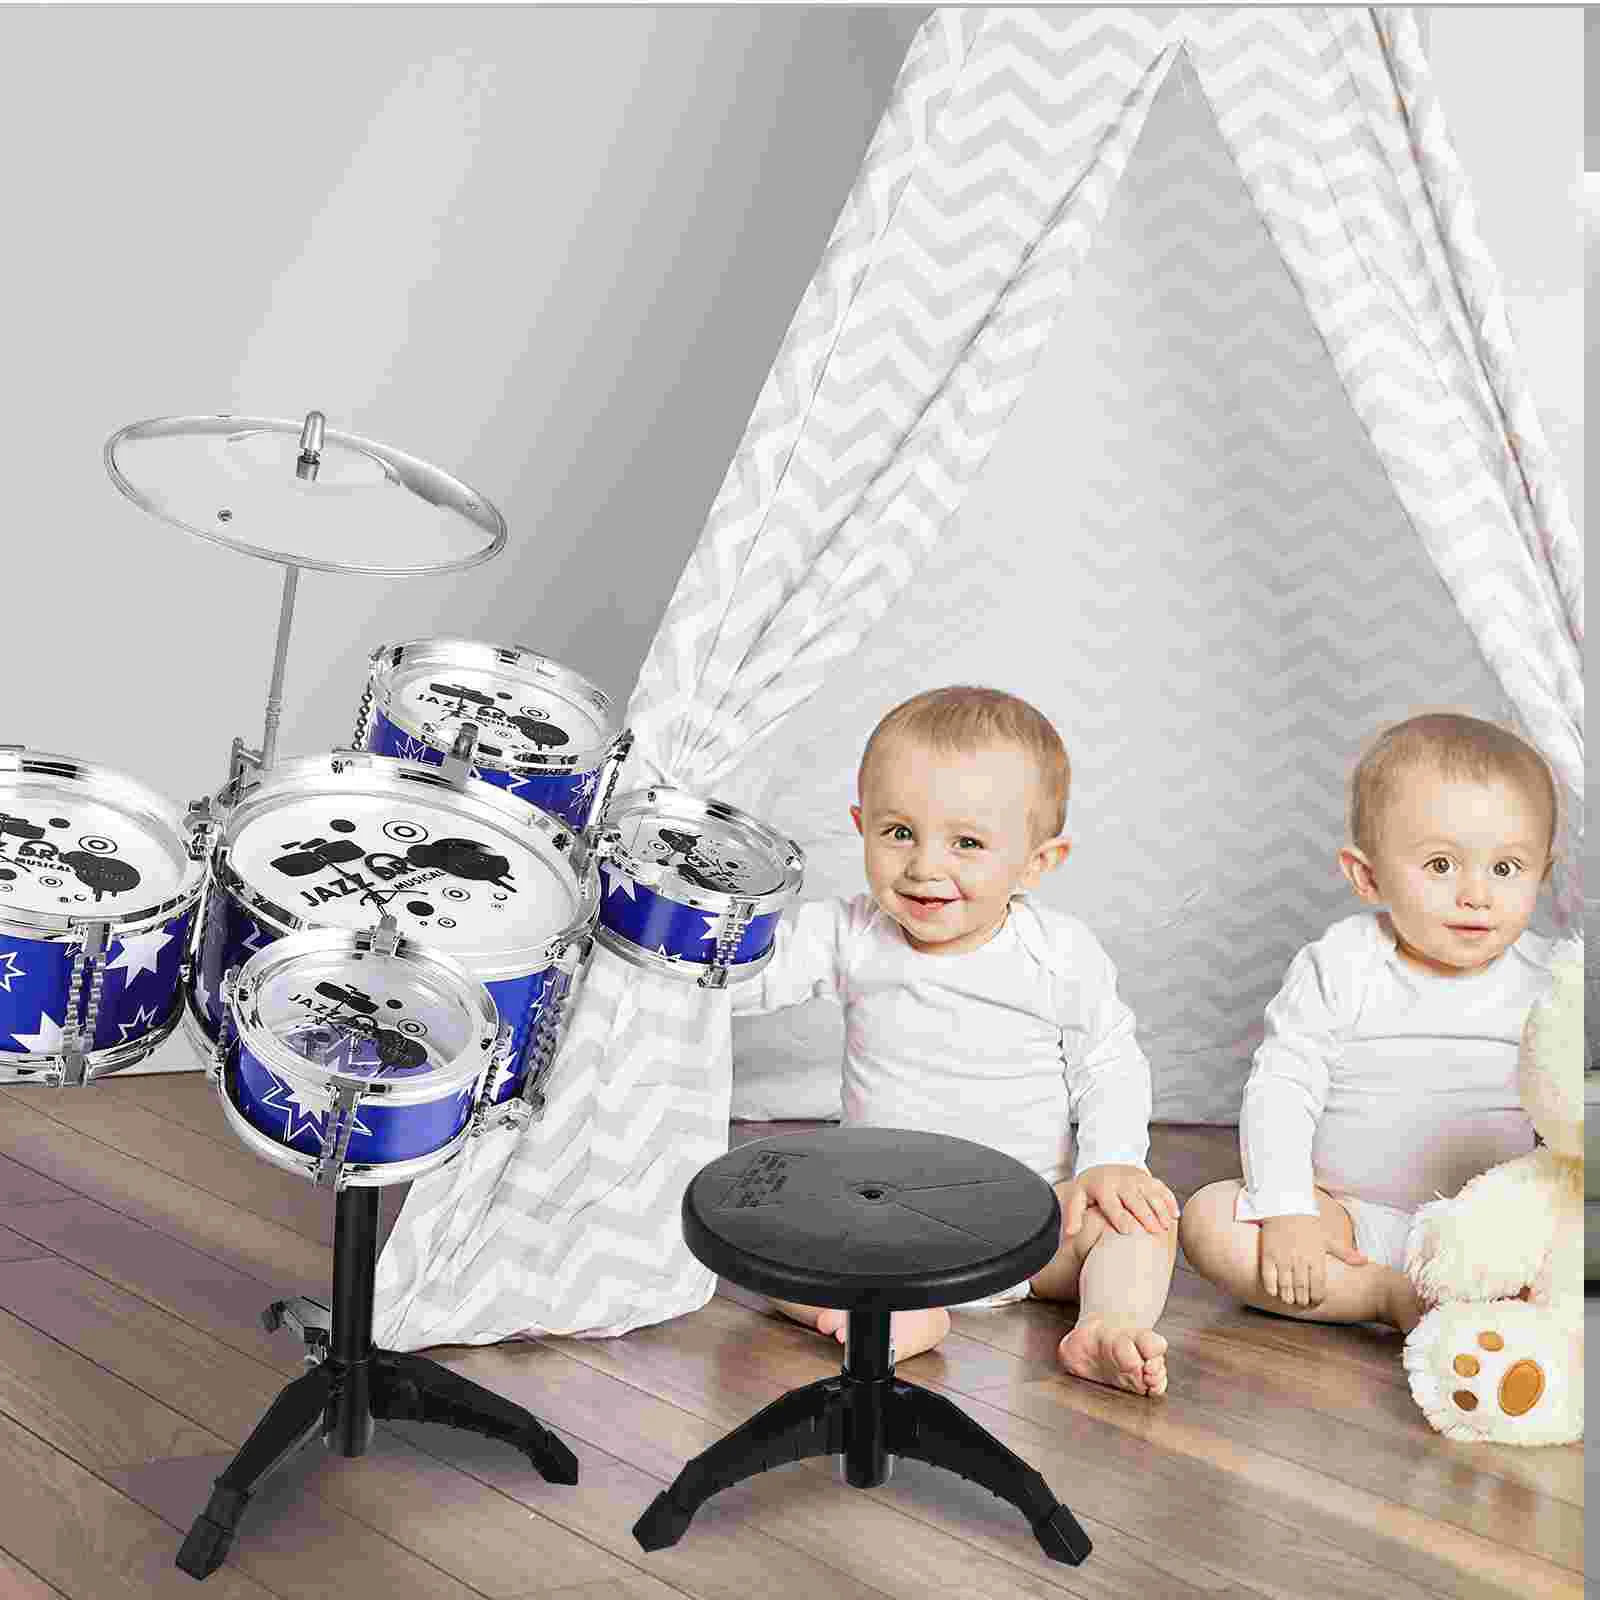 

Детский барабанный Набор из 3-х частей, детский барабанный набор, образовательные Ударные музыкальные инструменты с регулируемым престолом, тарелка, педаль, барабанные палочки